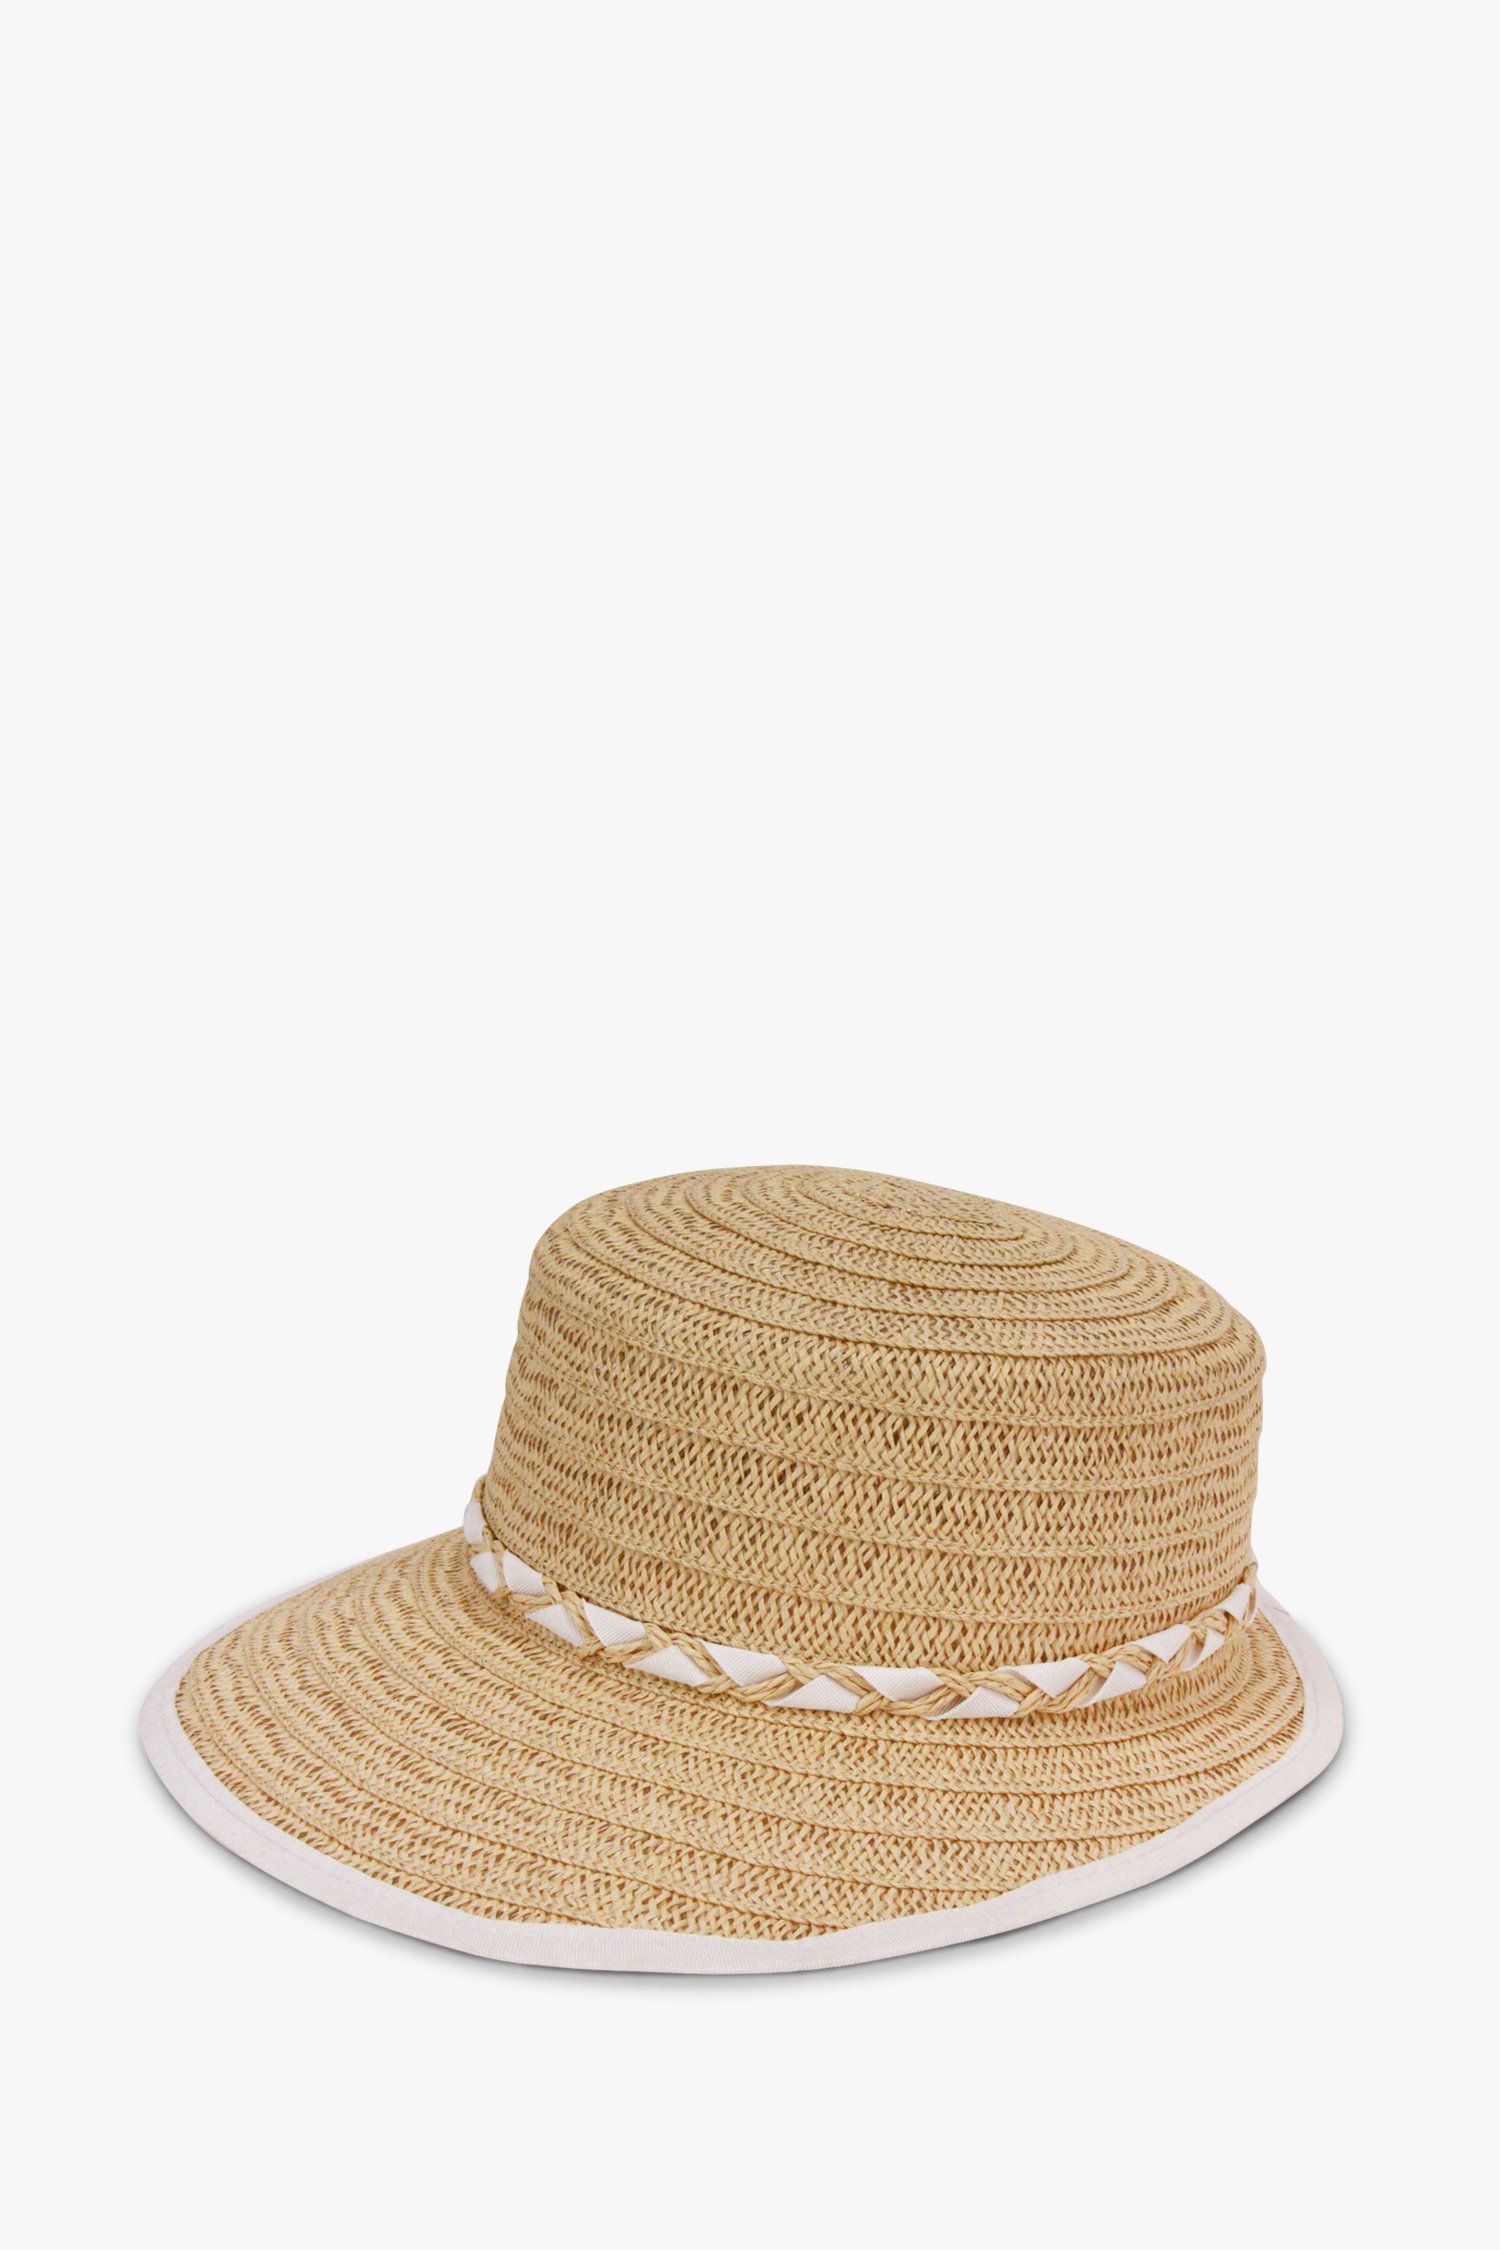 Lichte geweven hoed met witte details van Modeno voor Dames